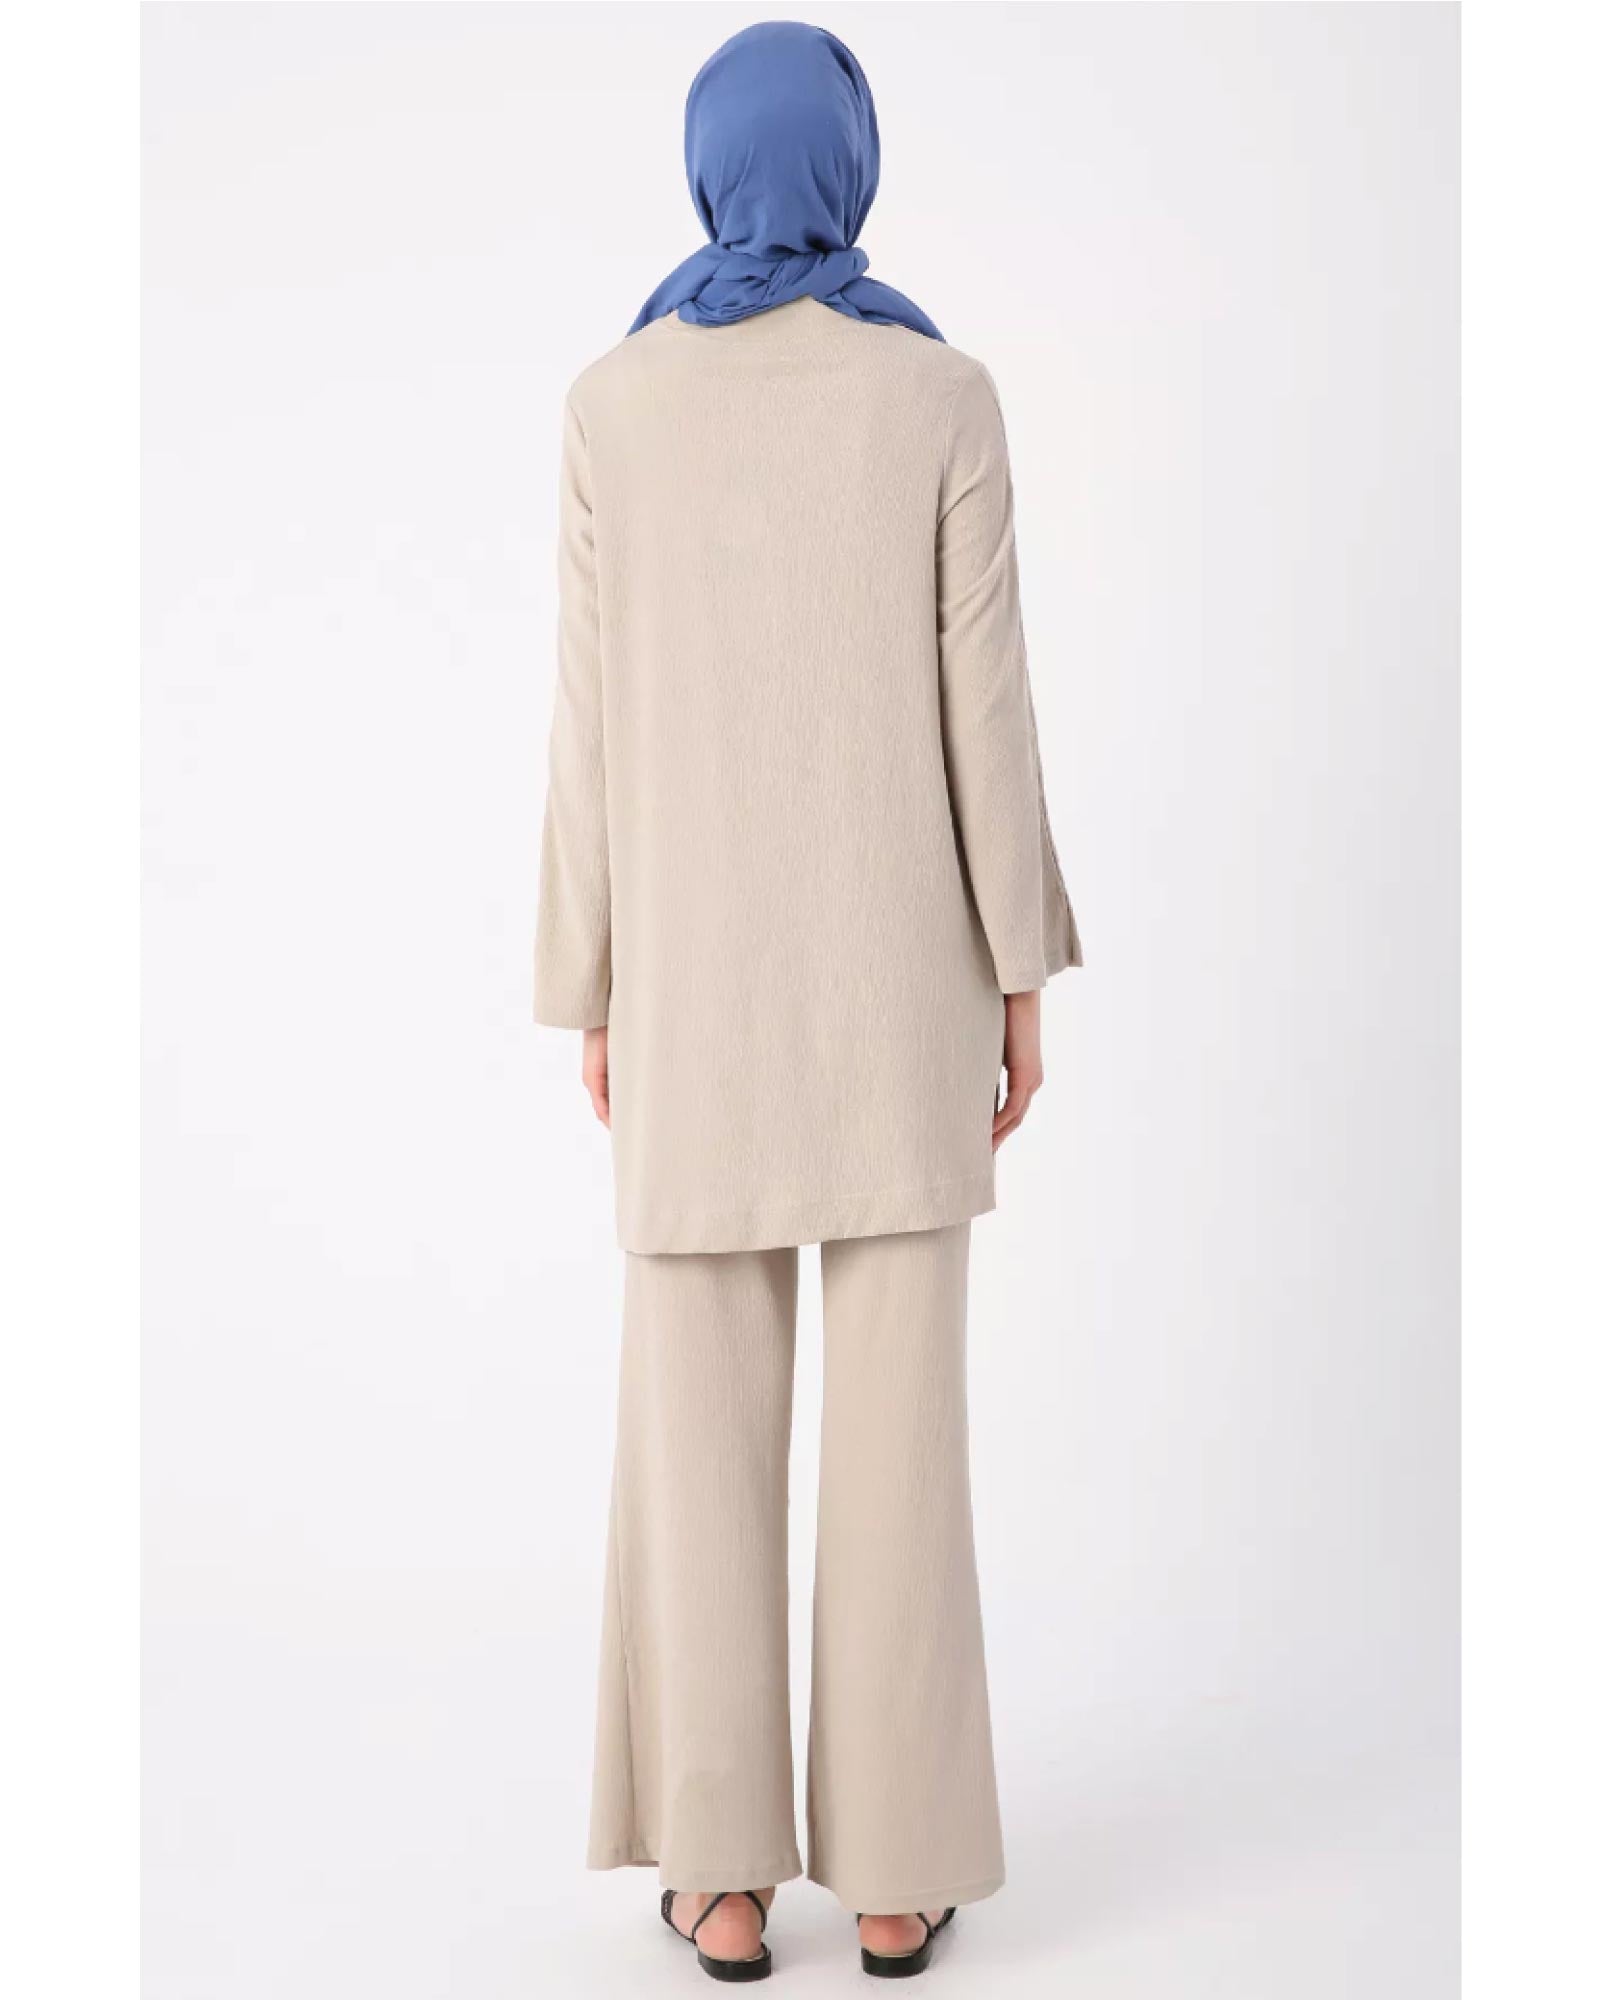 Hijab- Tunika-Hose-Zweitiler mit Ärmeln und Seitenschlitzen und Rundhalsausschnitt